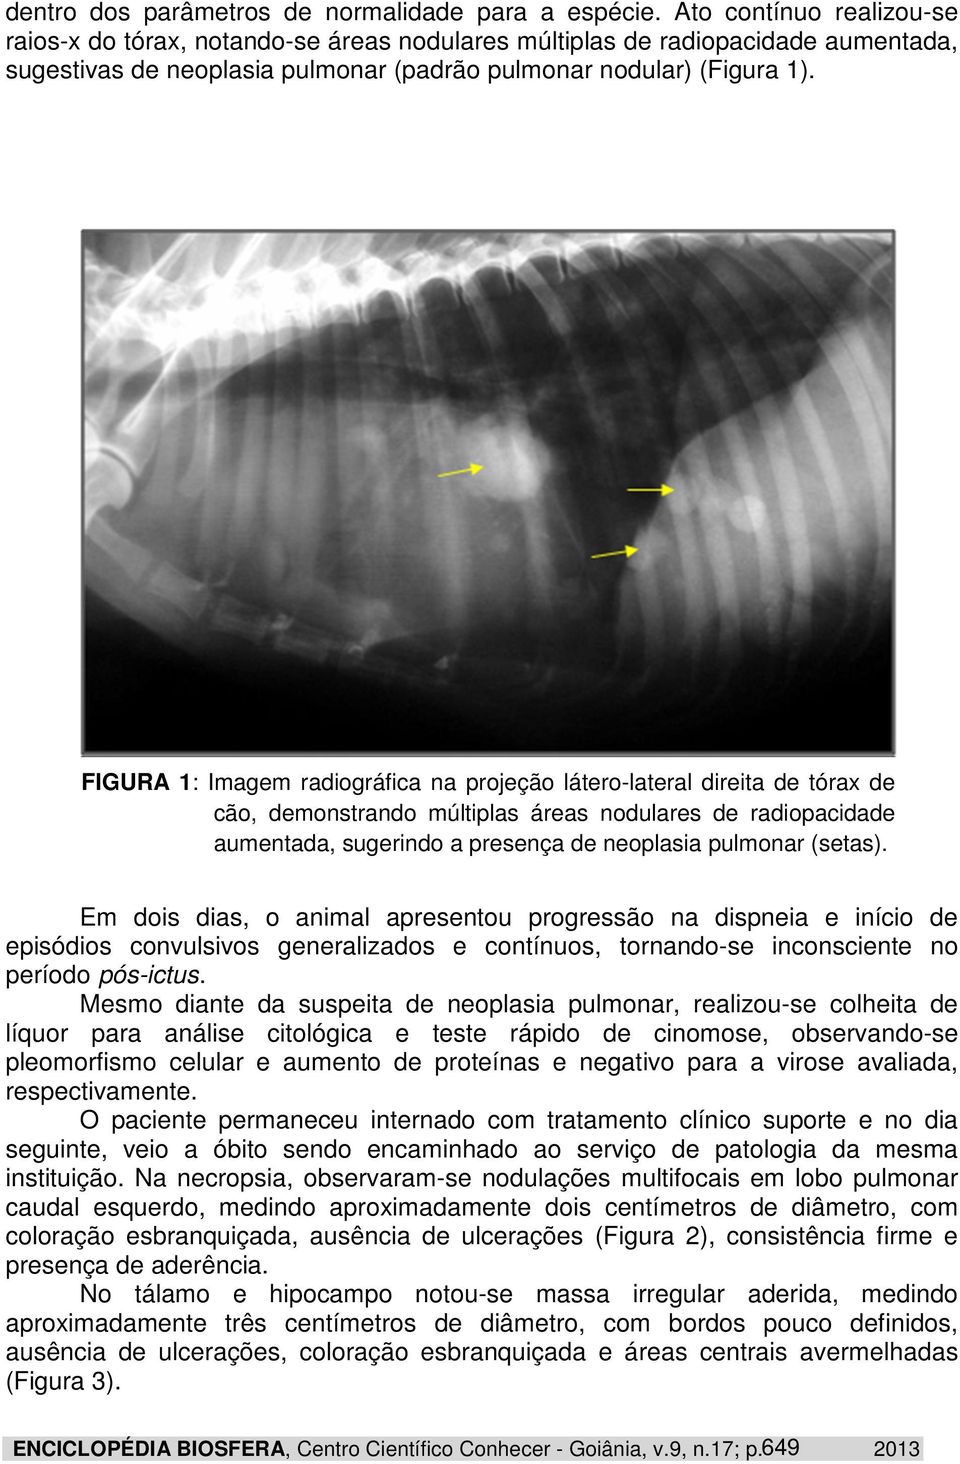 FIGURA 1: Imagem radiográfica na projeção látero-lateral direita de tórax de cão, demonstrando múltiplas áreas nodulares de radiopacidade aumentada, sugerindo a presença de neoplasia pulmonar (setas).